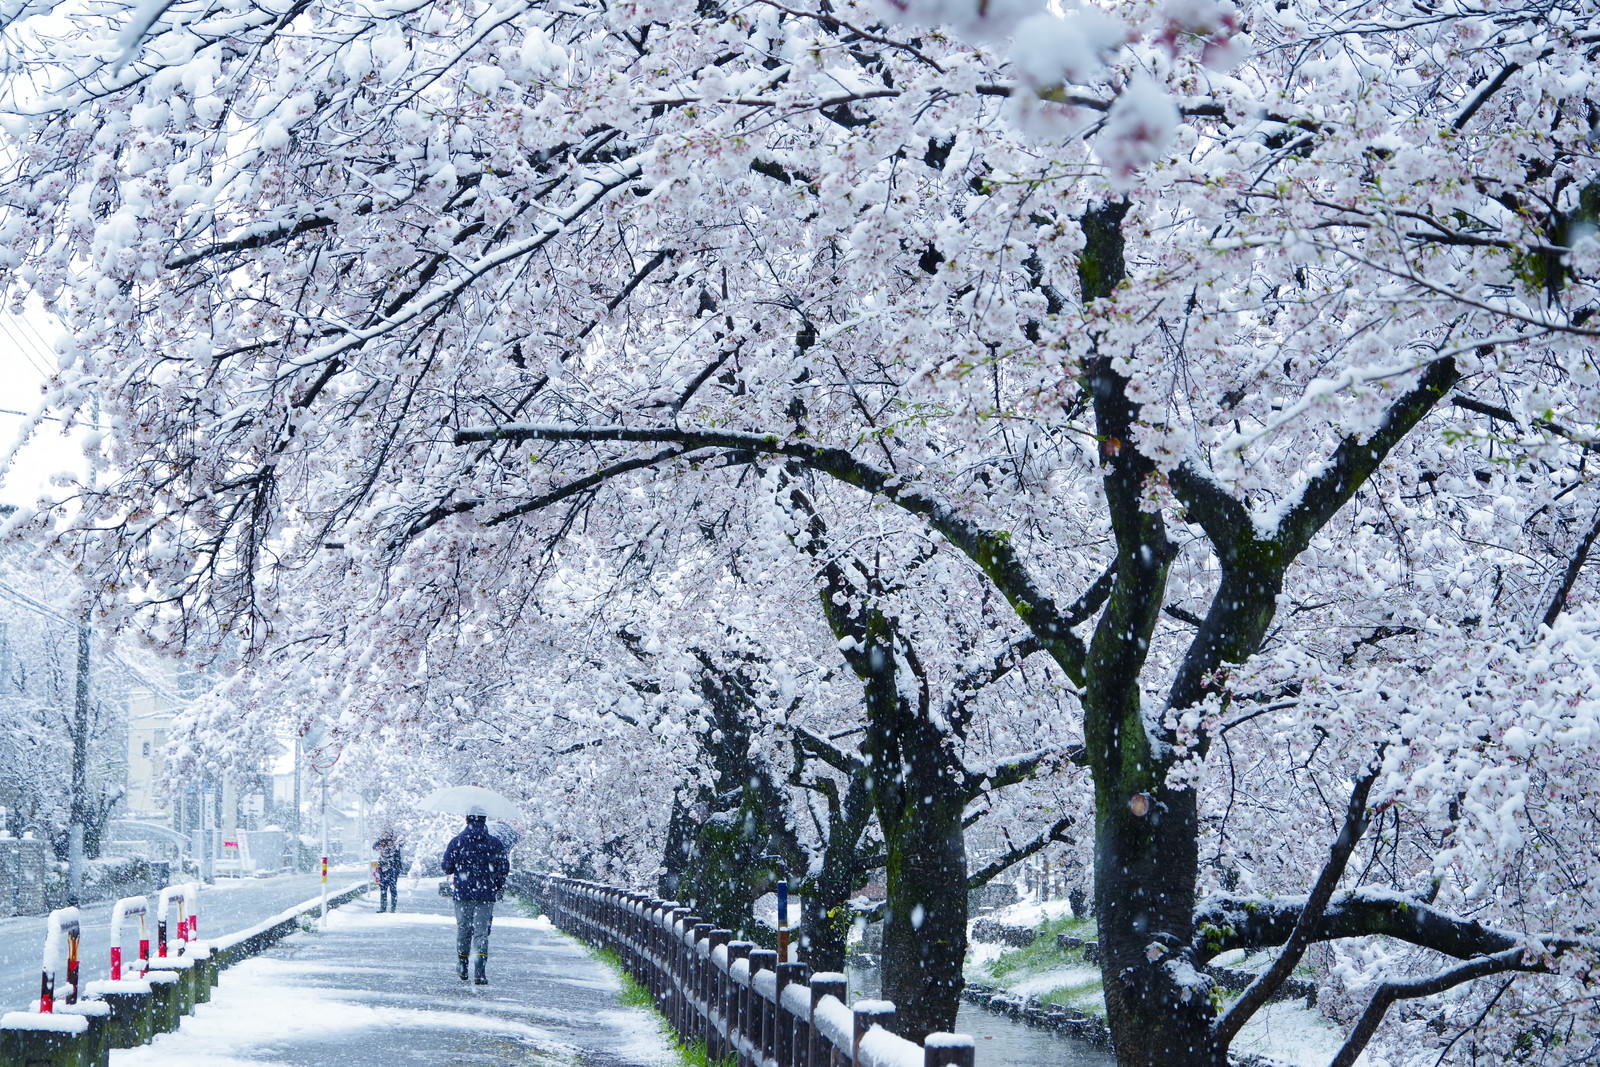 「満開に咲く桜並木と舞い散る雪」の写真